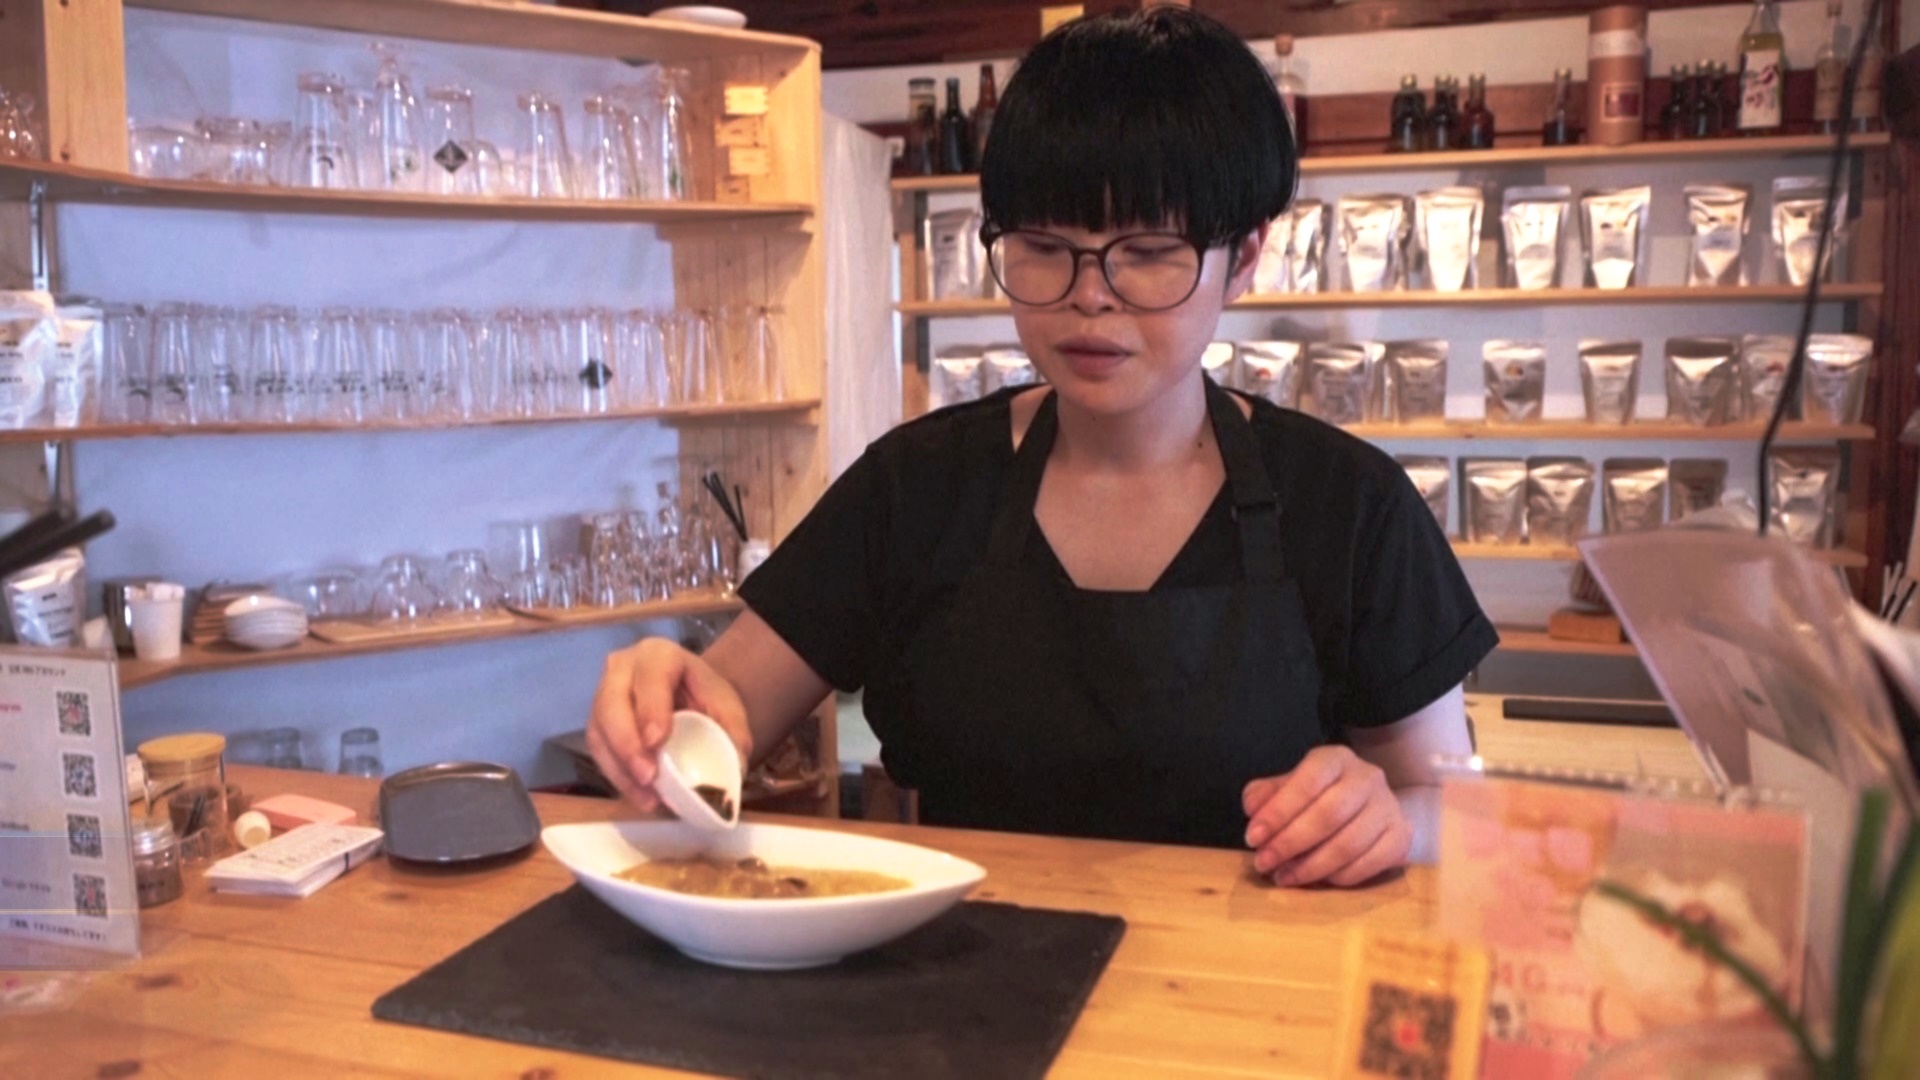 Рис со сверчками и коктейль с жуками подают в кафе в Токио